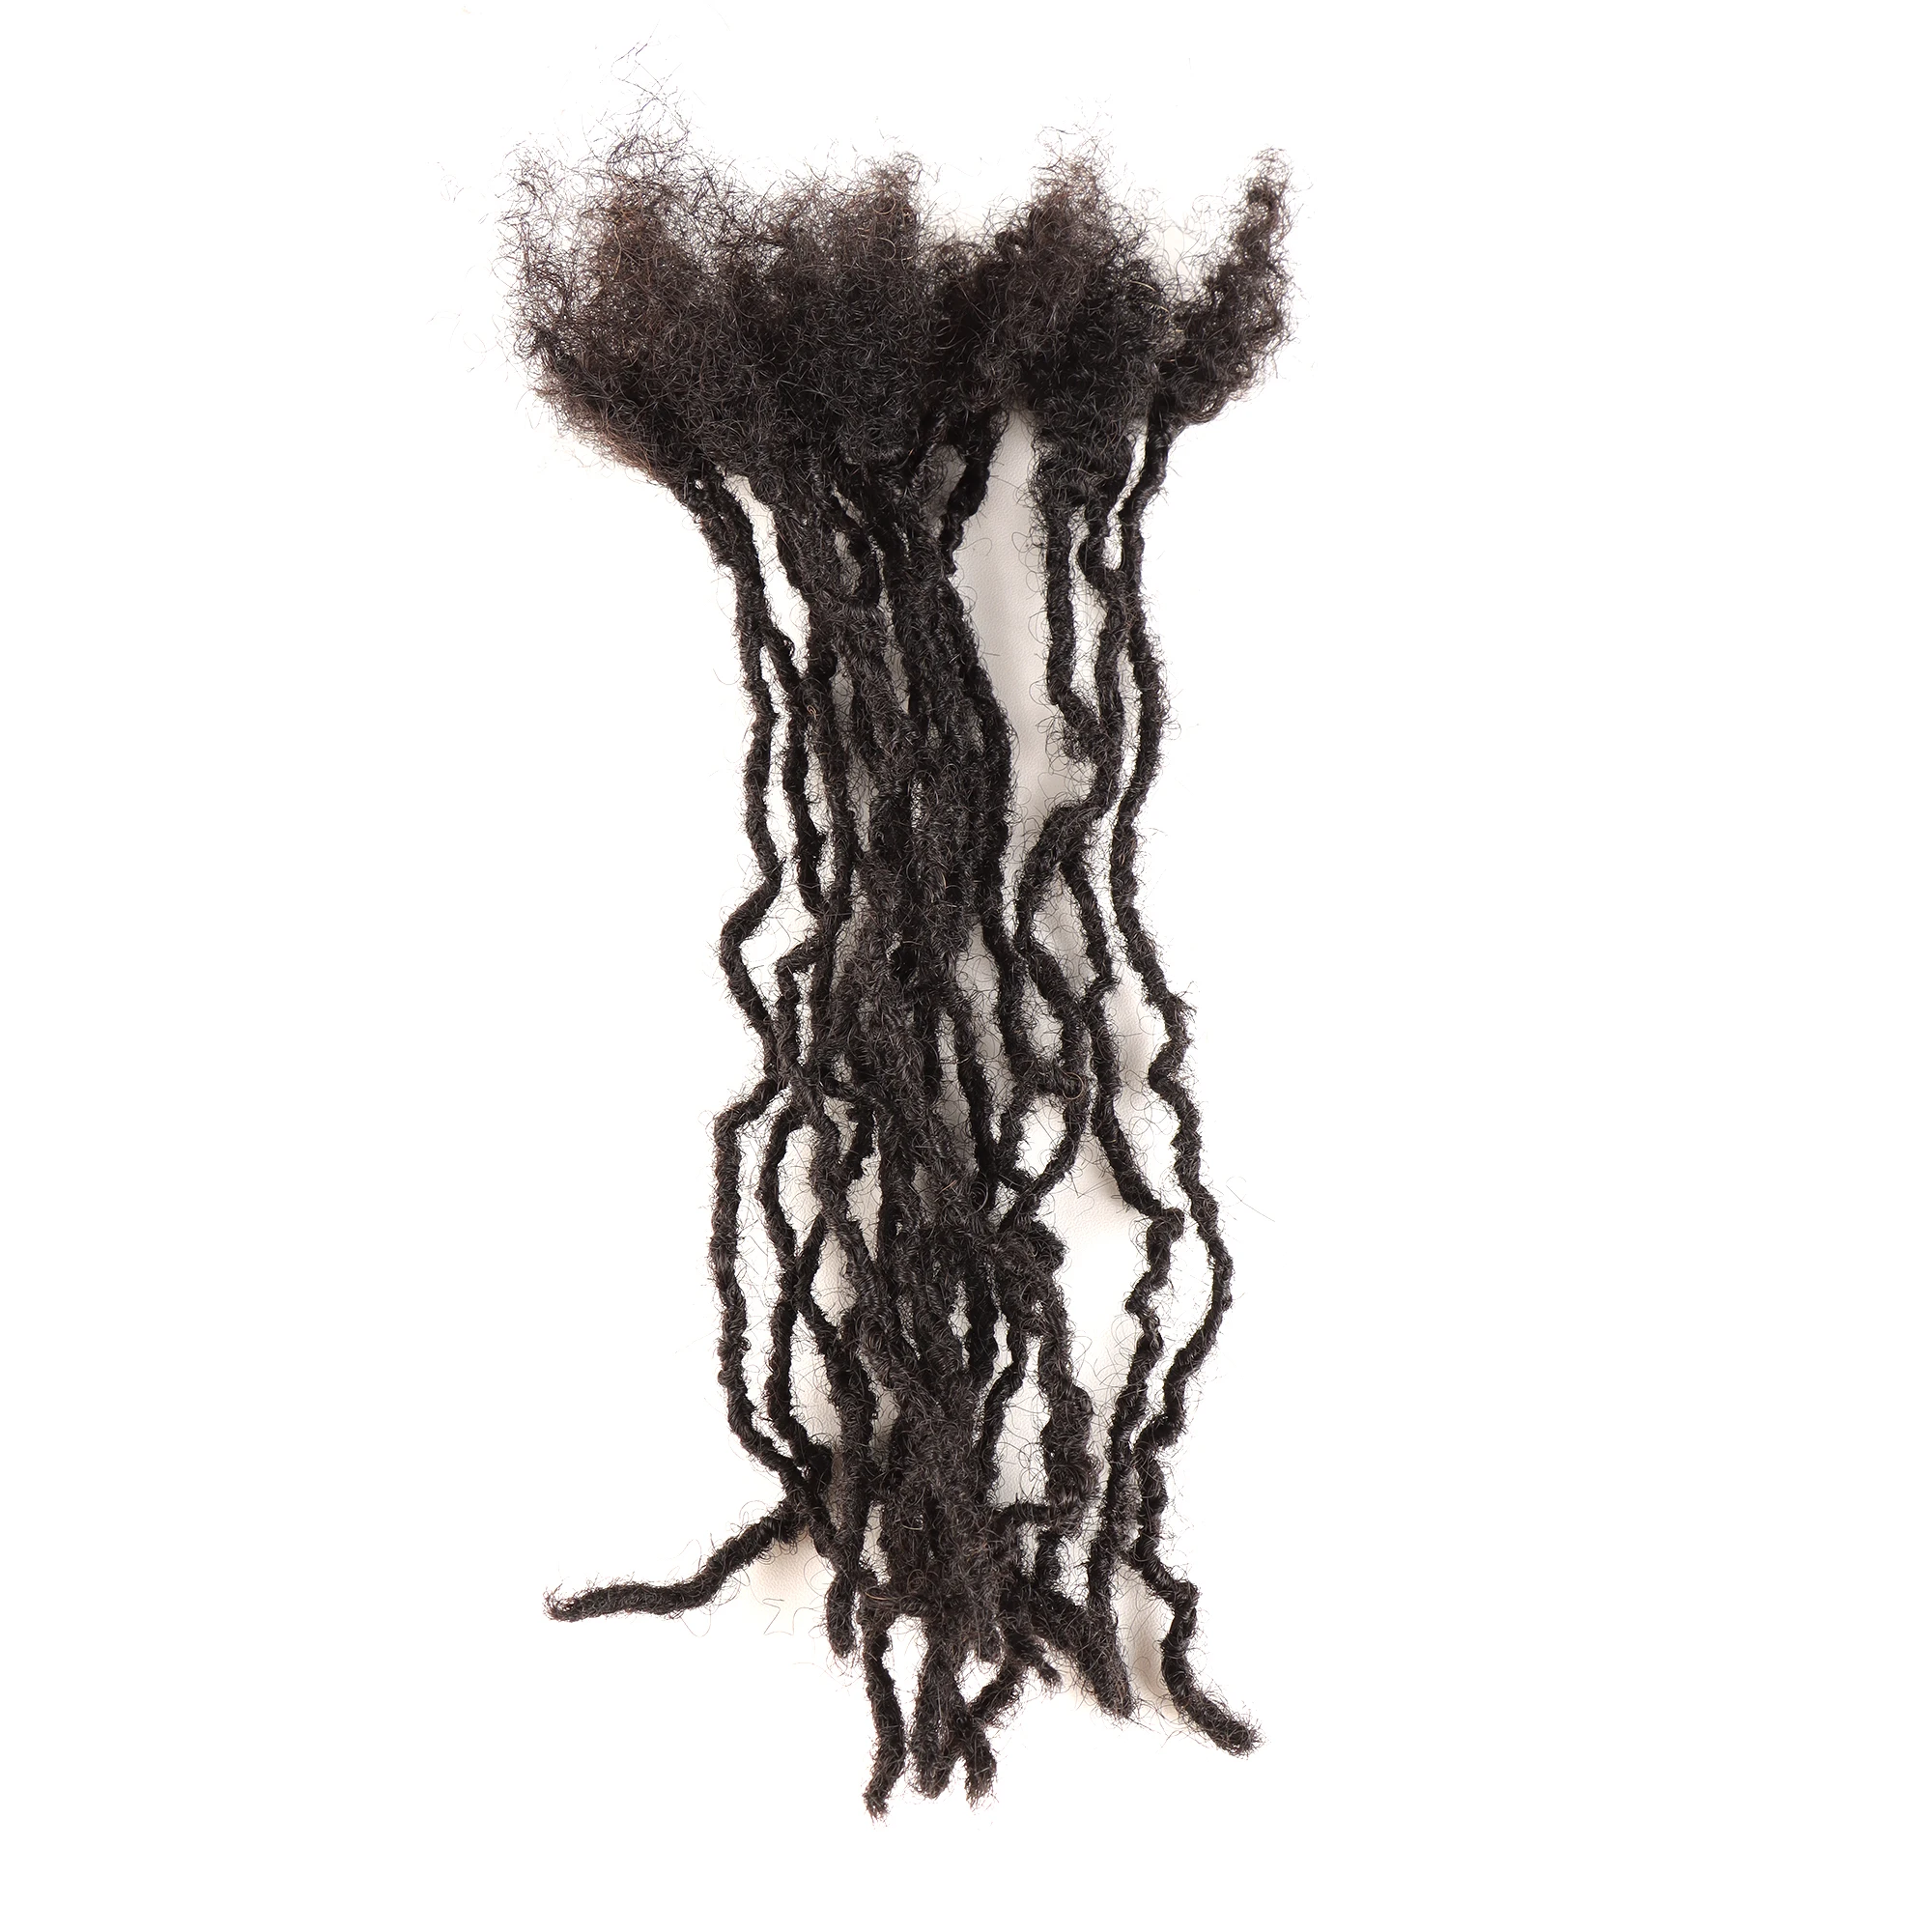 AHVAST 100% Натуральные Волосы, Микрочастицы, Дреды для наращивания толщиной 0,2 см-0,3 см